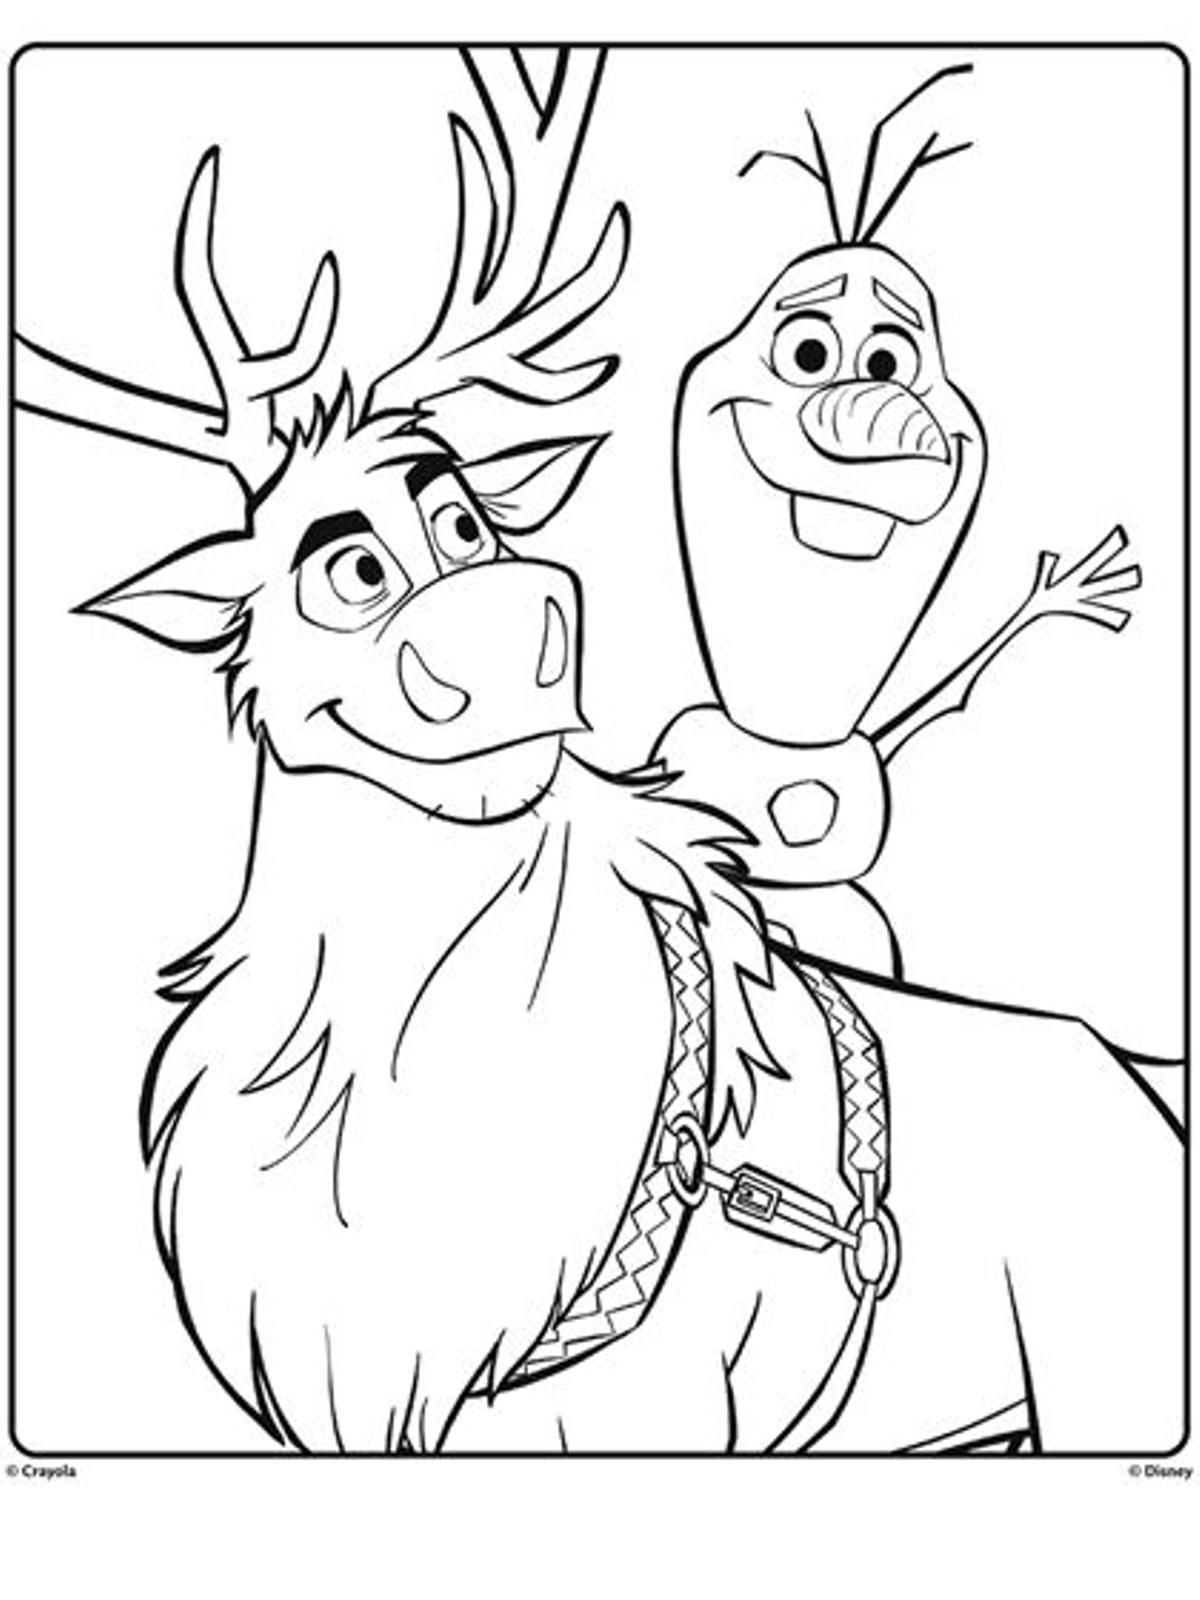 Dibujo de Olaf para colorear esta Navidad.